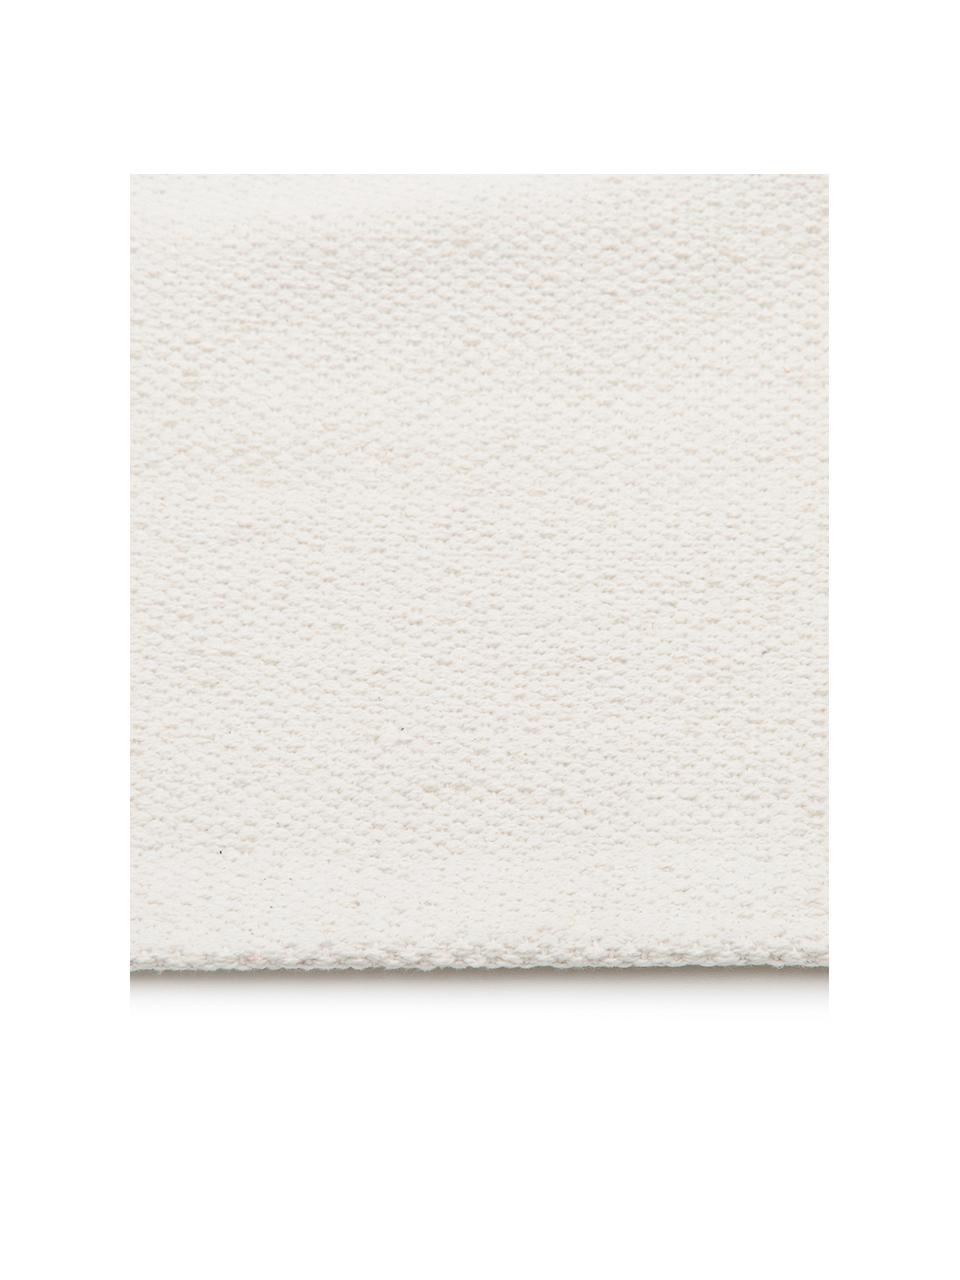 Dünner Baumwollläufer Agneta in Cremeweiß, handgewebt, 100% Baumwolle, Cremeweiß, 70 x 250 cm